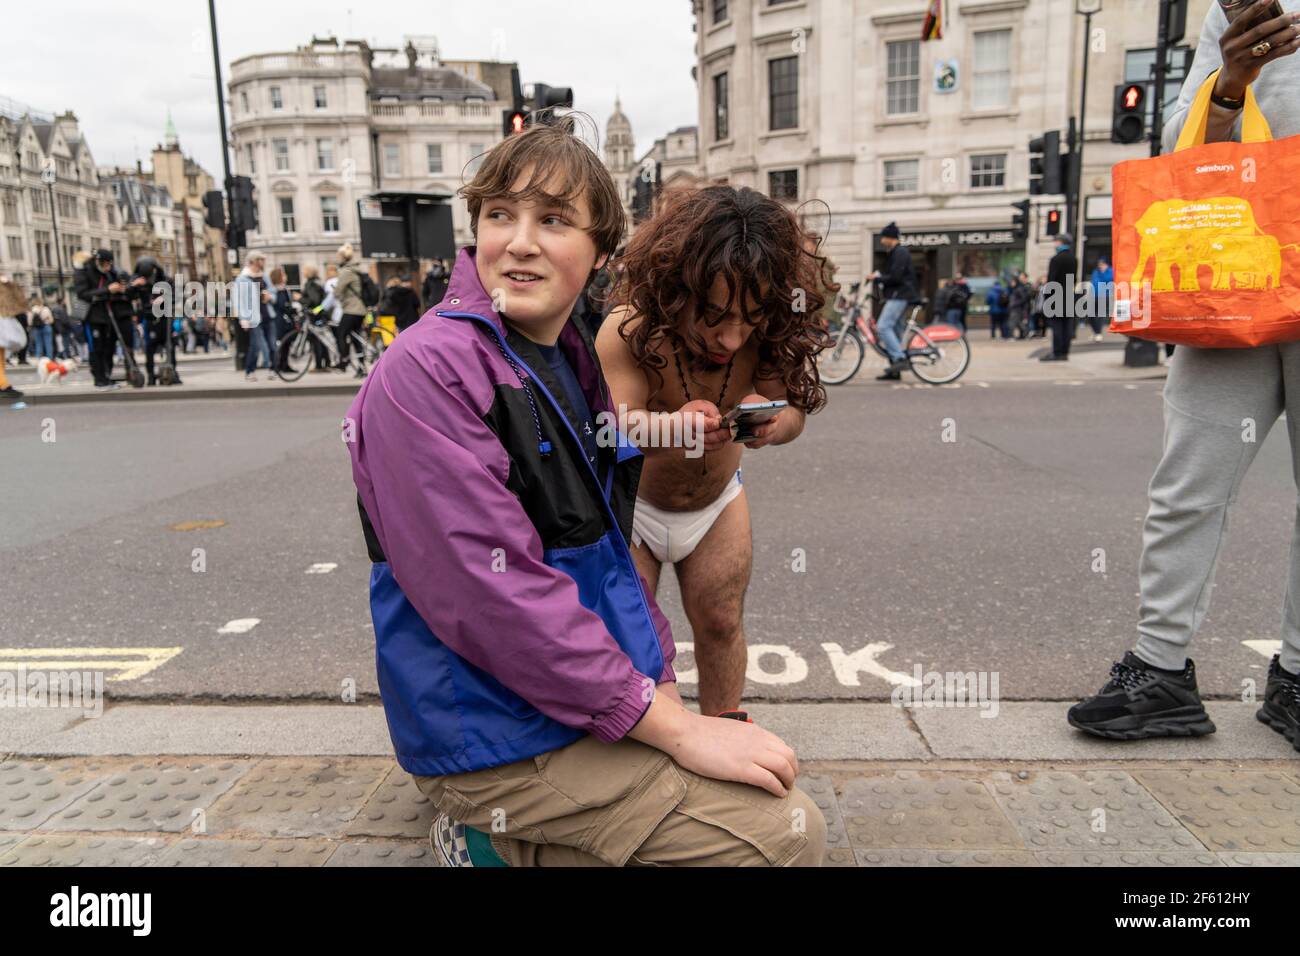 Lors de la manifestation anti Lockdown à Londres, au Royaume-Uni, le jeune homme voit quelque chose en ligne. 20.03.21 Banque D'Images